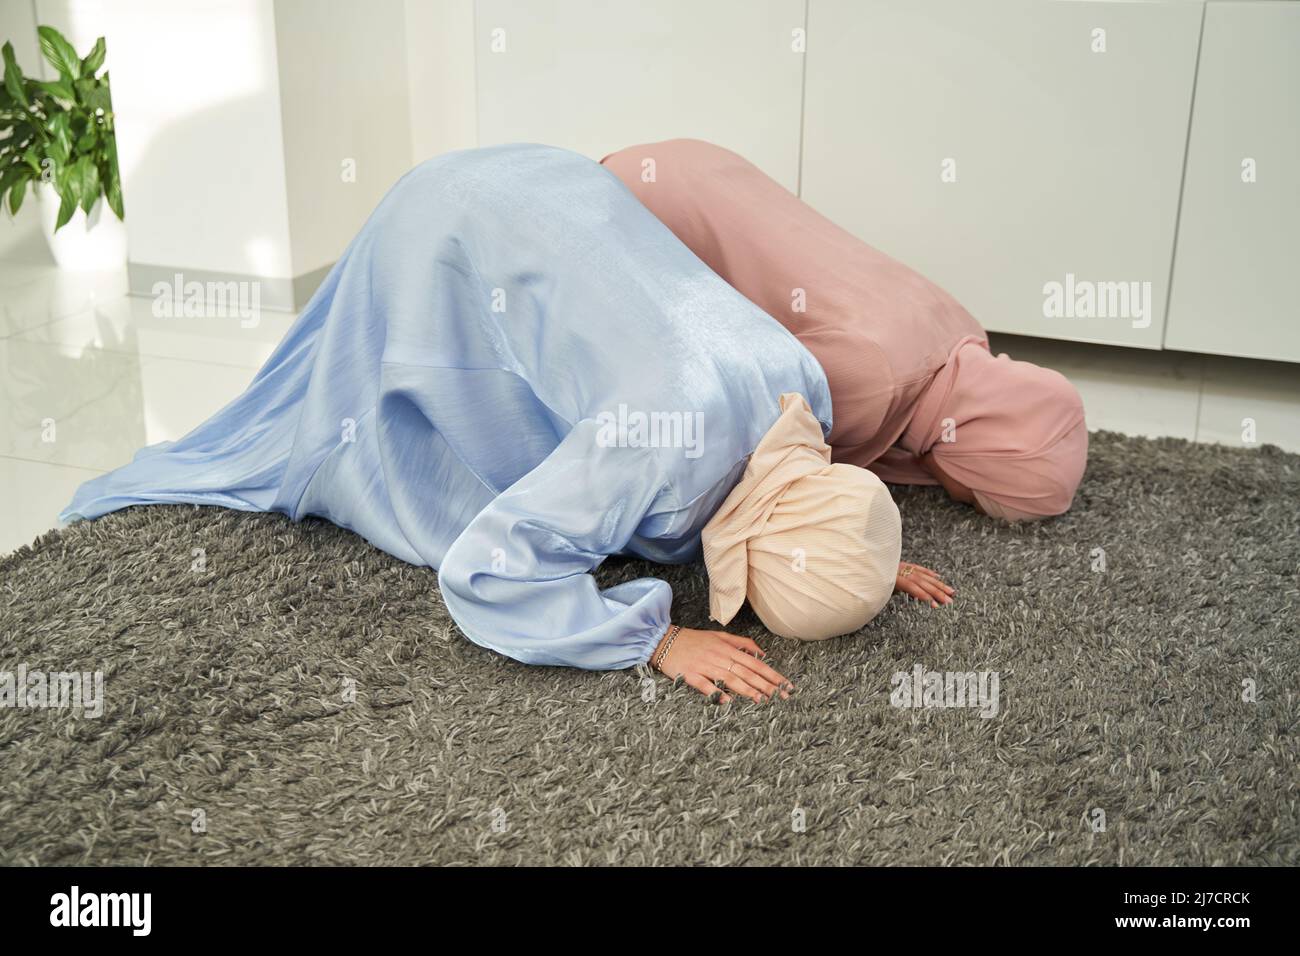 Muslim women performing sujud praying position at home Stock Photo